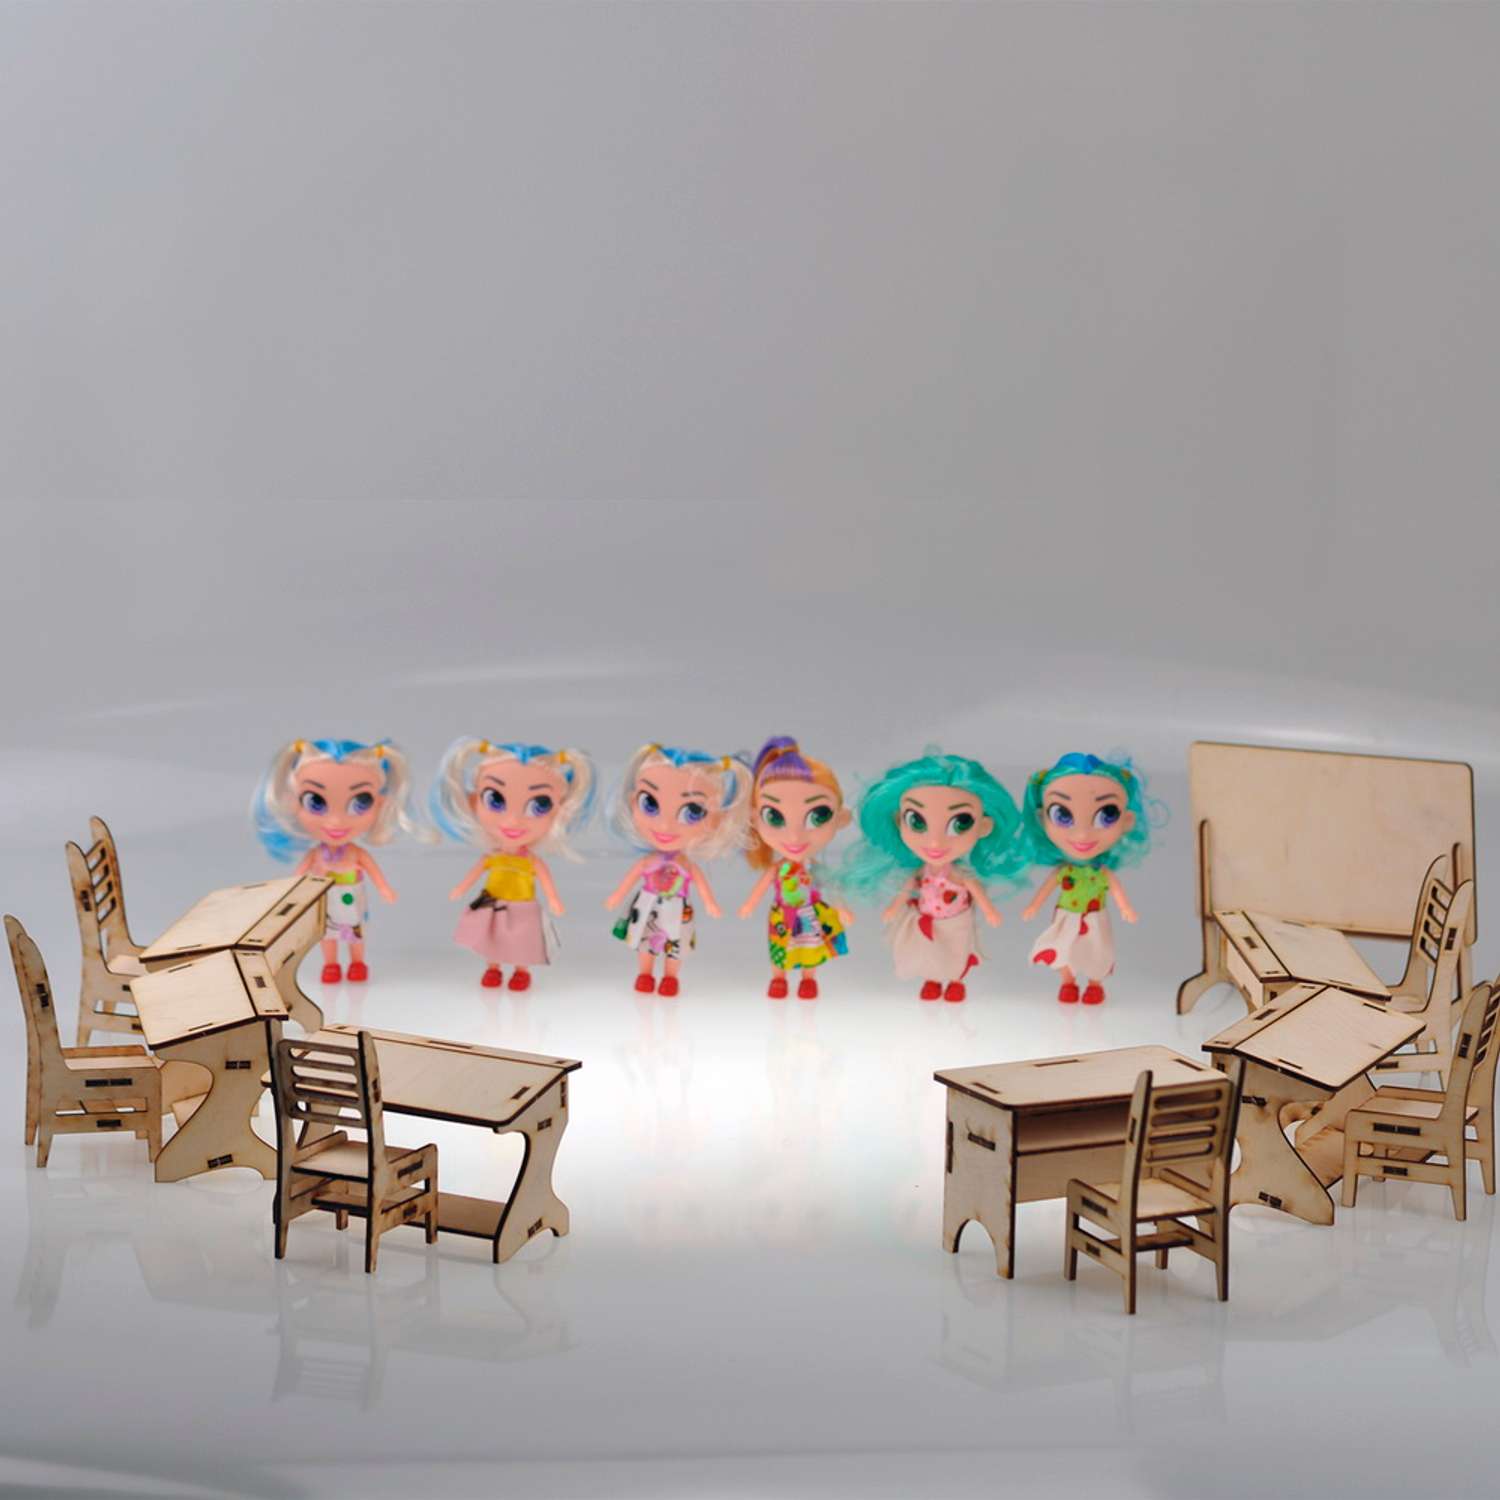 Игровой деревянный класс Amazwood 5 парт- учительский стол - доска - 6 стульев - 6 кукол AW1006 - фото 4